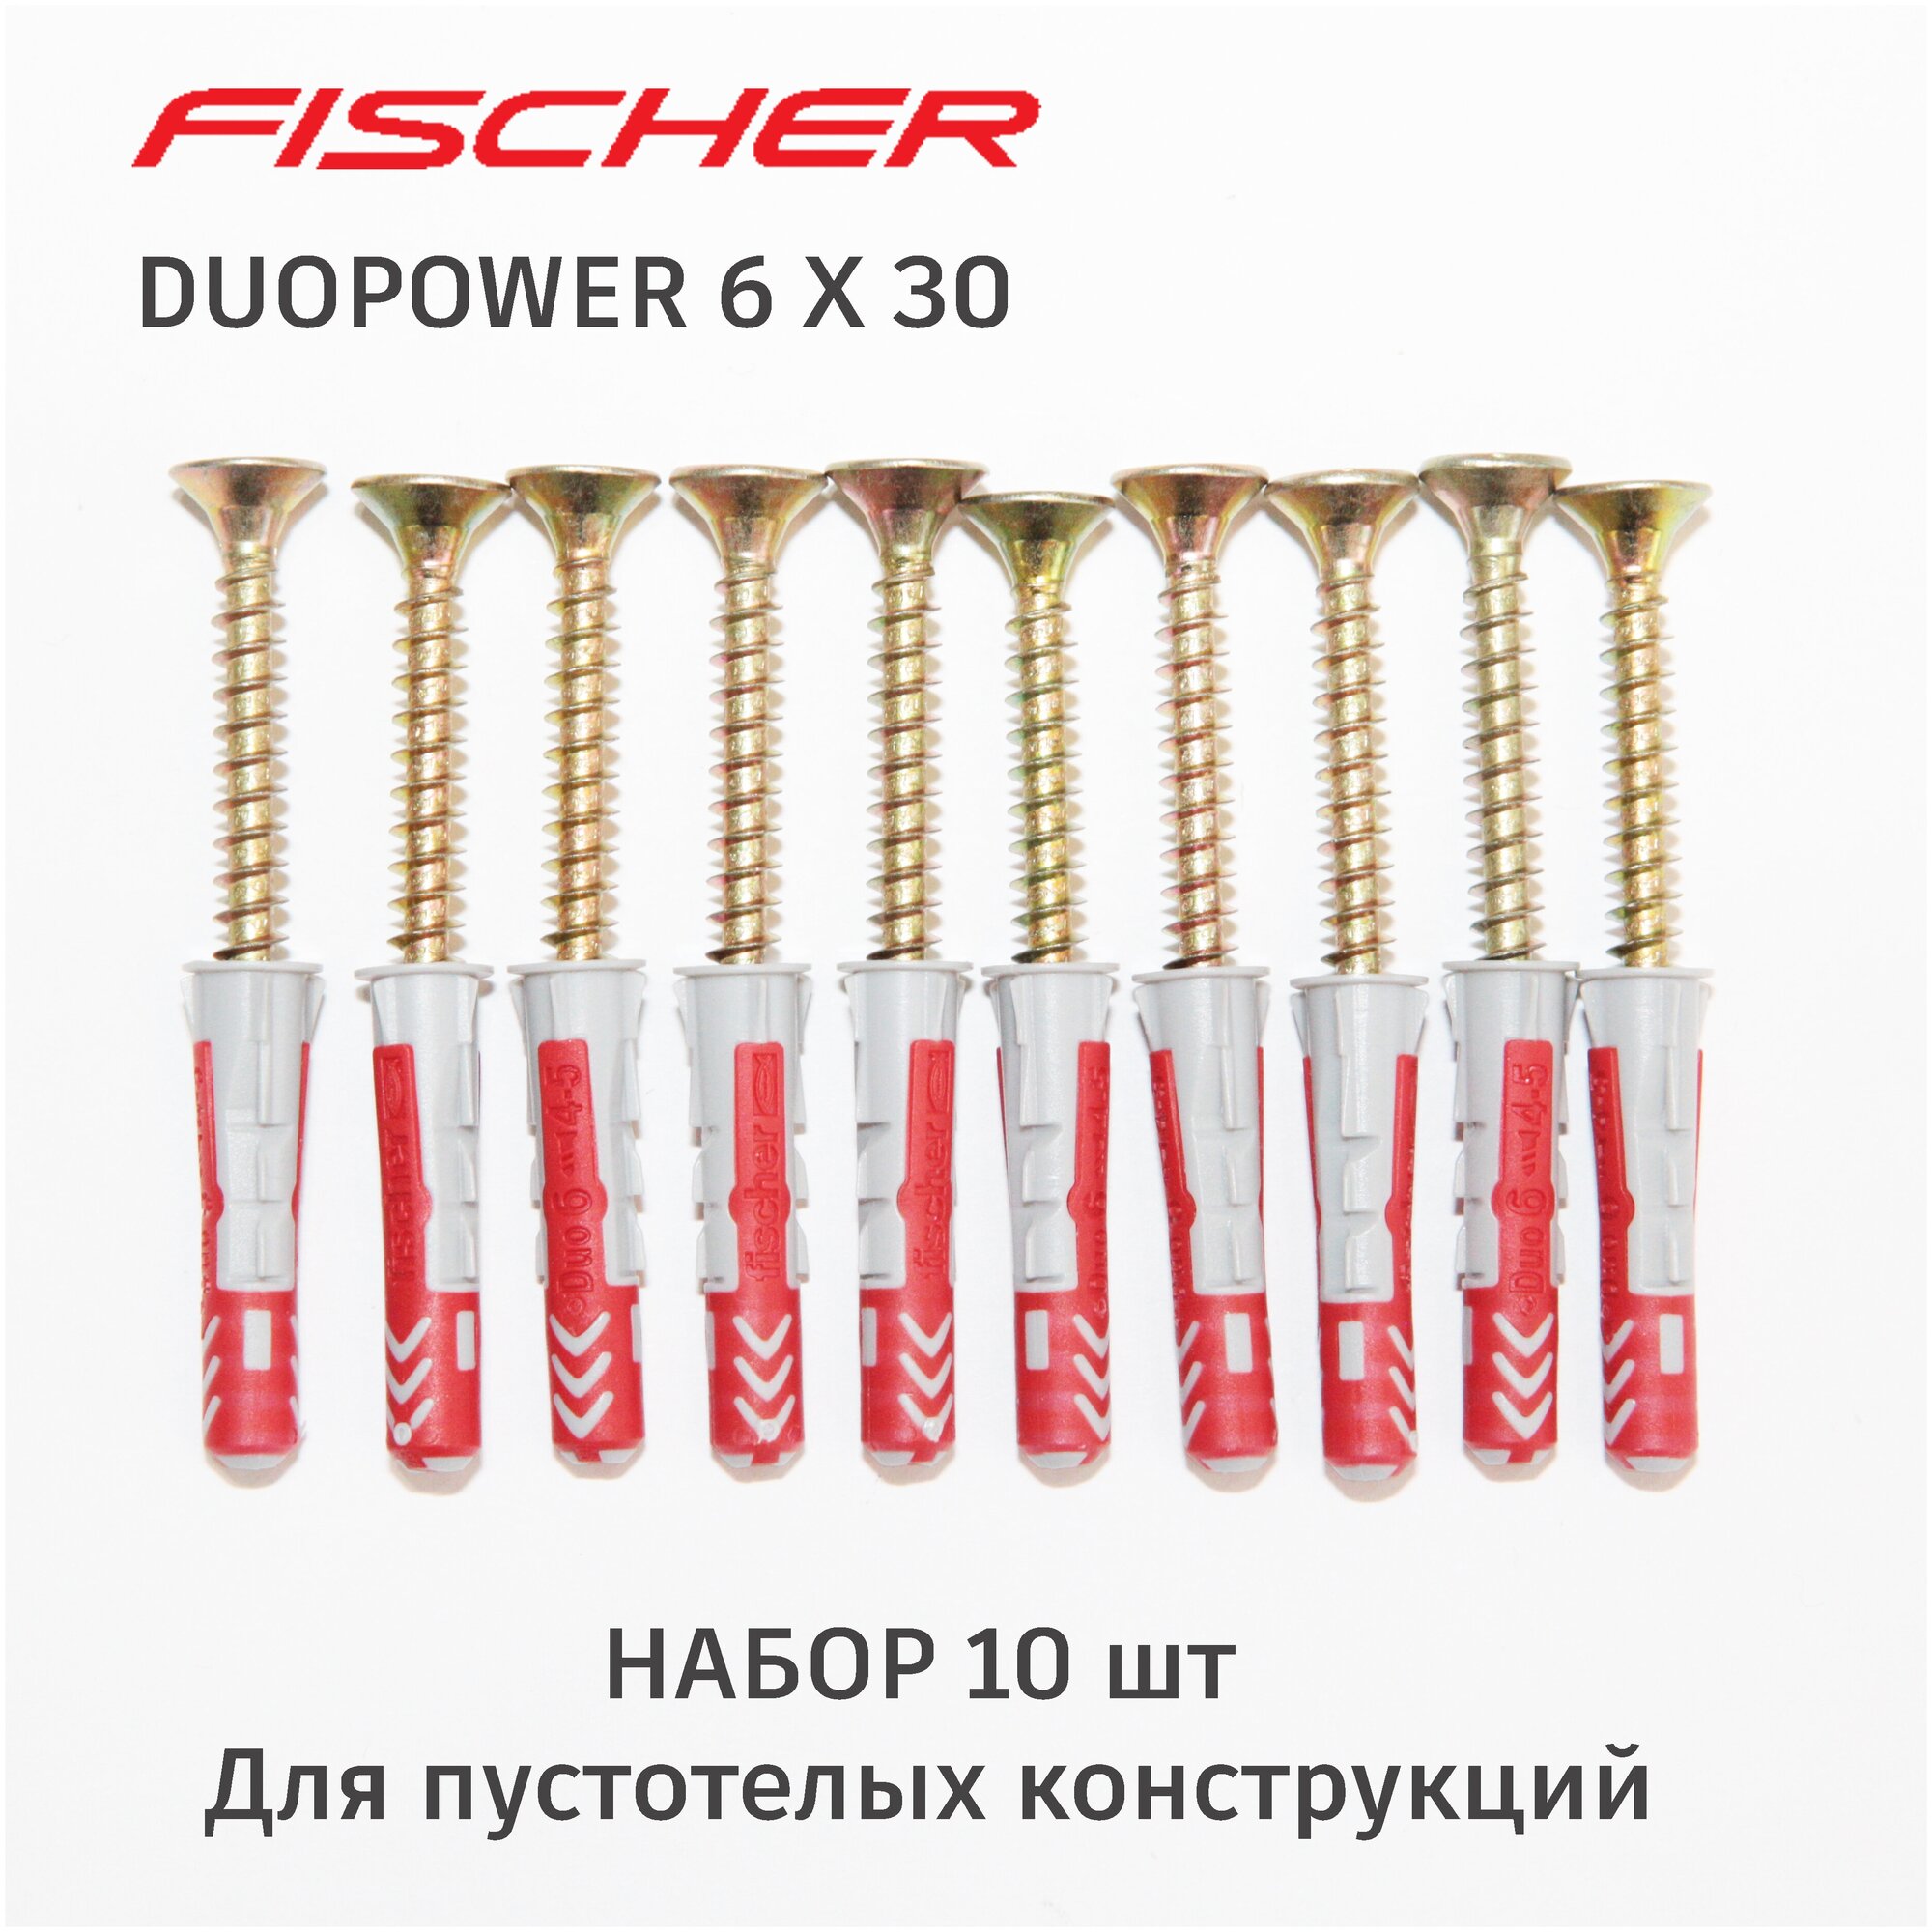 Дюбель Fischer DuoPower 6x30 мм универсальный двухкомпонентный 10 шт. + саморезы конусные